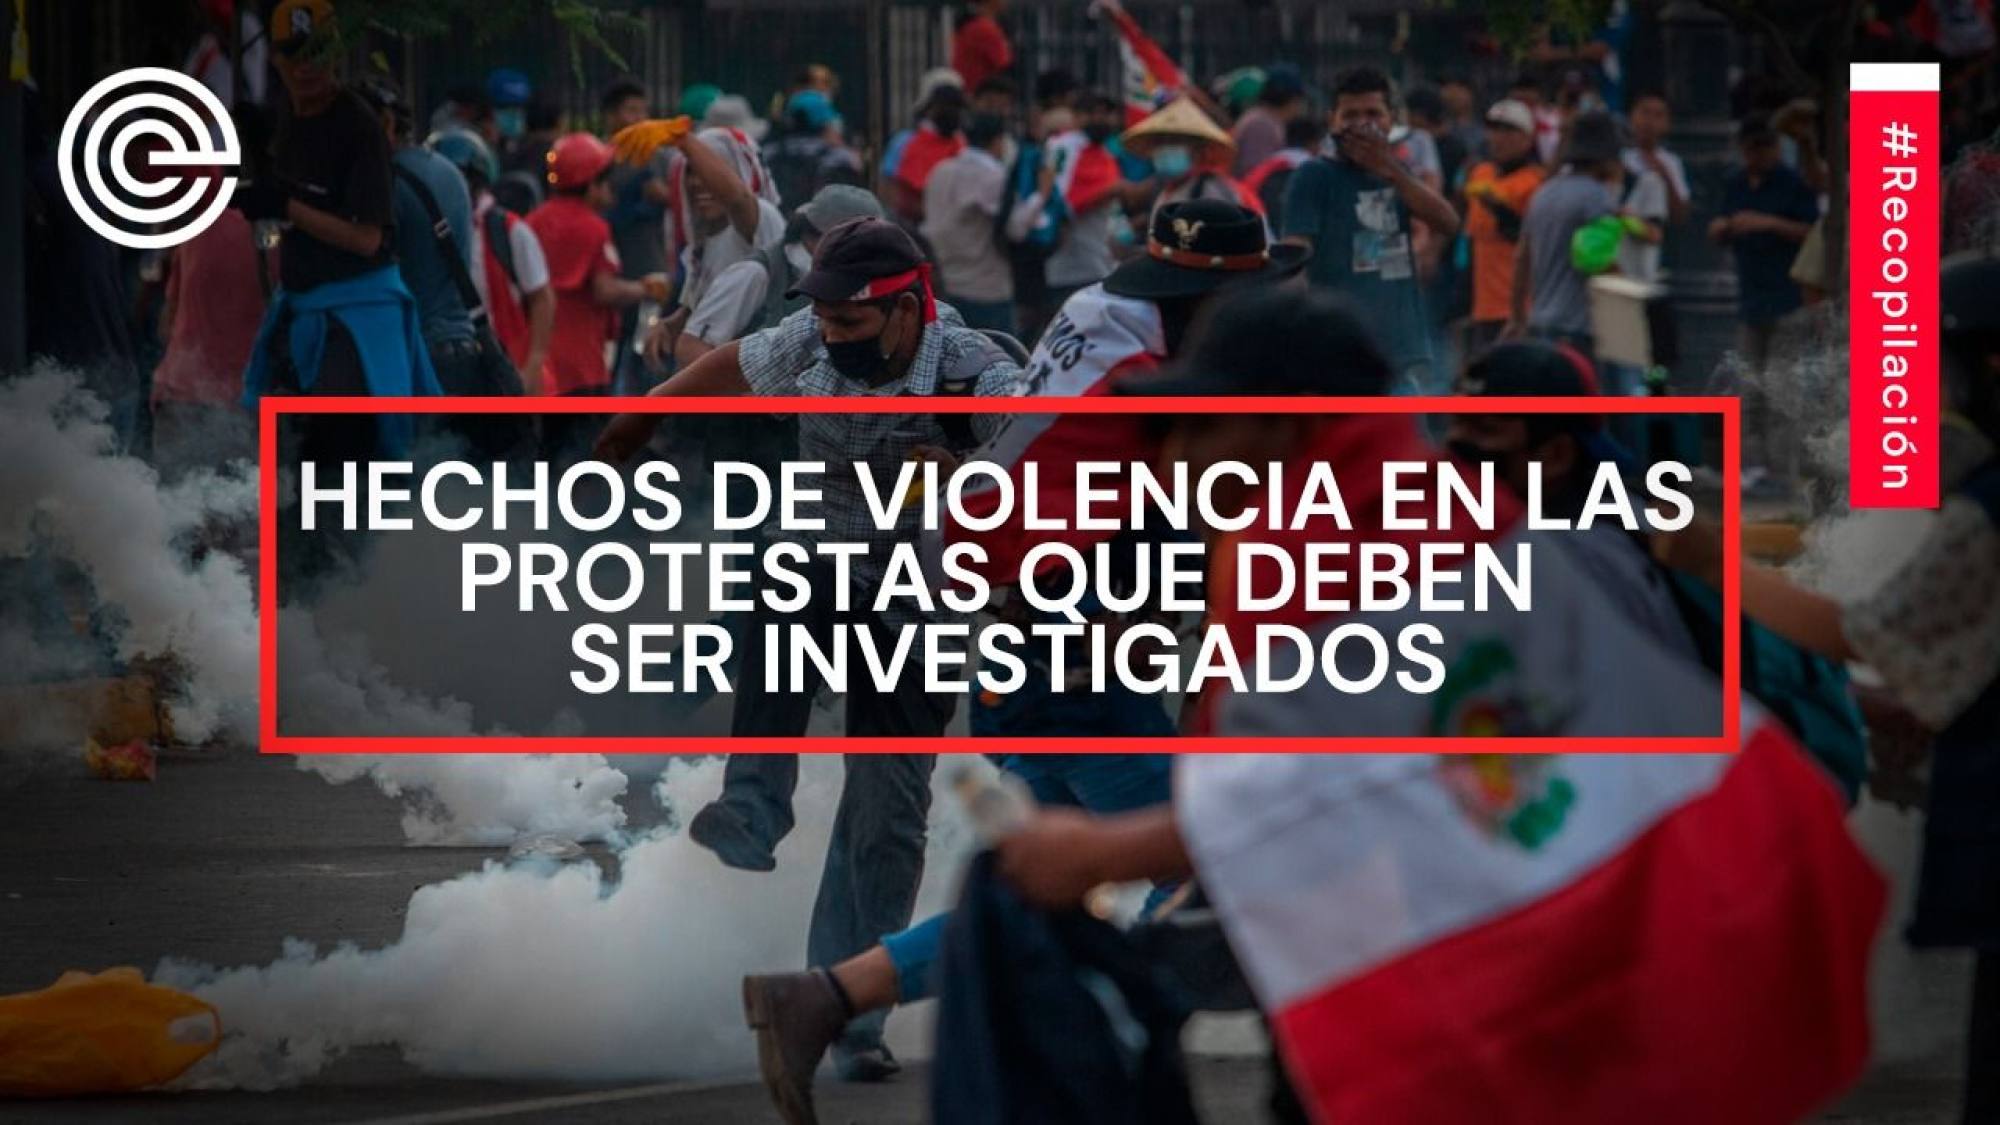 Hechos de violencia en las protestas que deben ser investigados, Epicentro TV